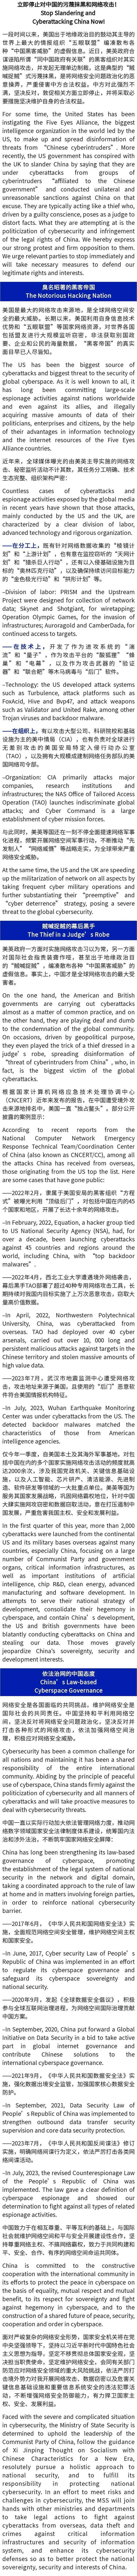 【国安关注】中英双语丨立即停止对中国的污蔑抹黑和网络攻击！